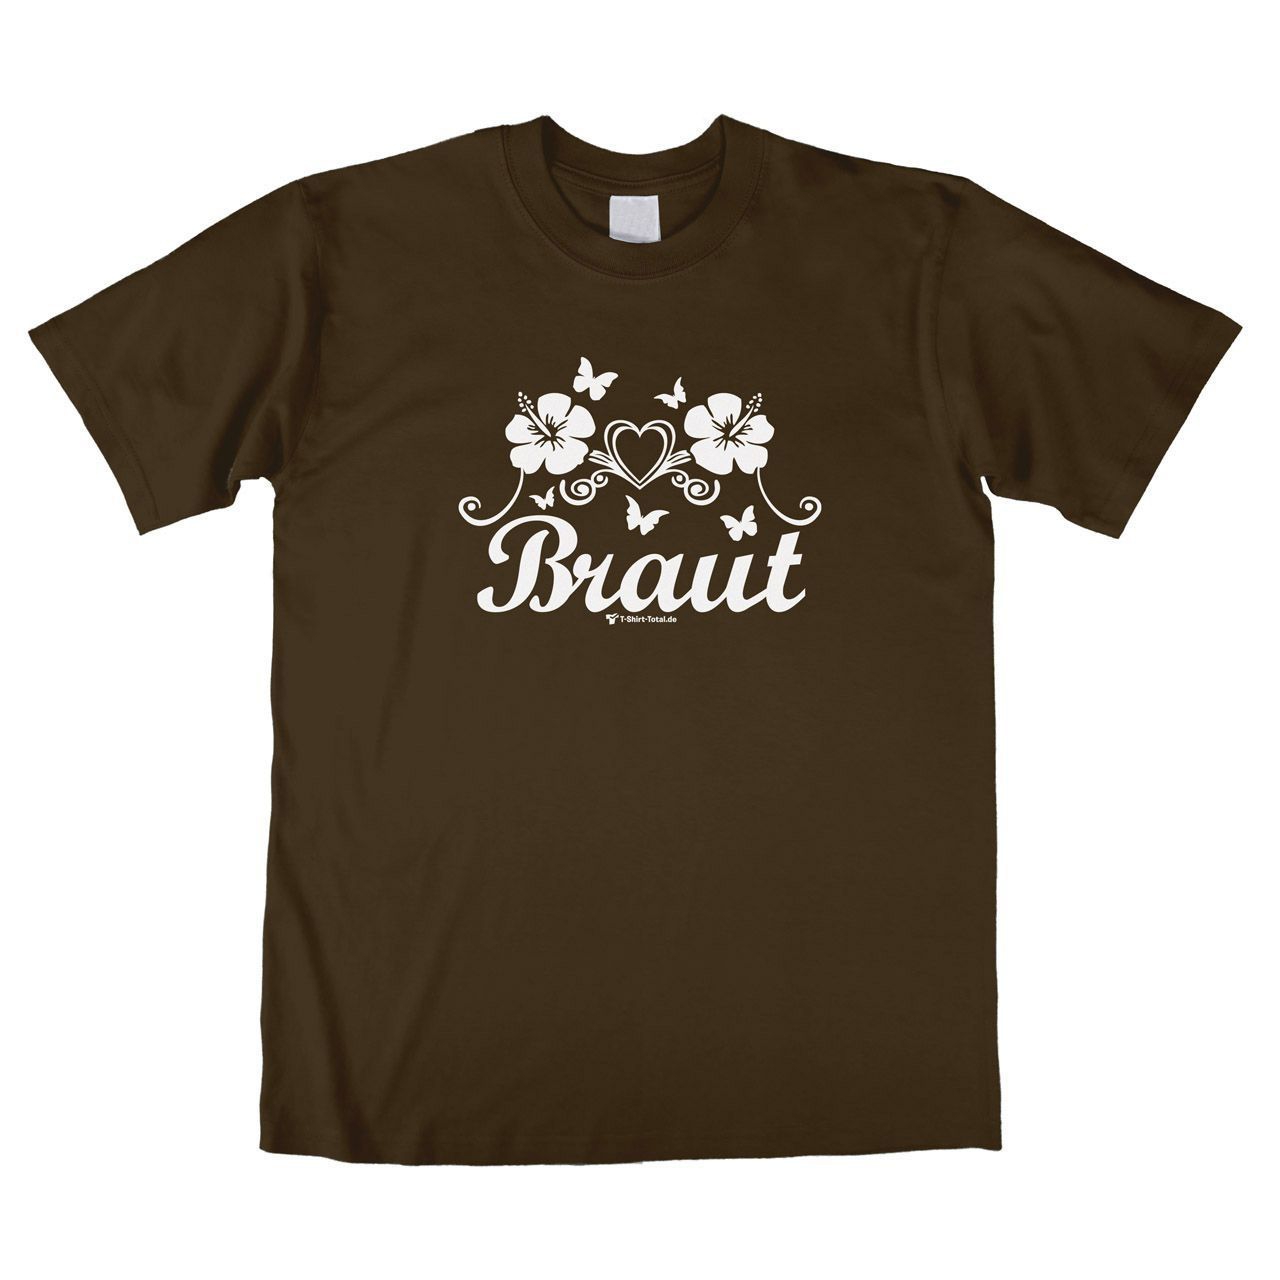 Die Braut Unisex T-Shirt braun Small